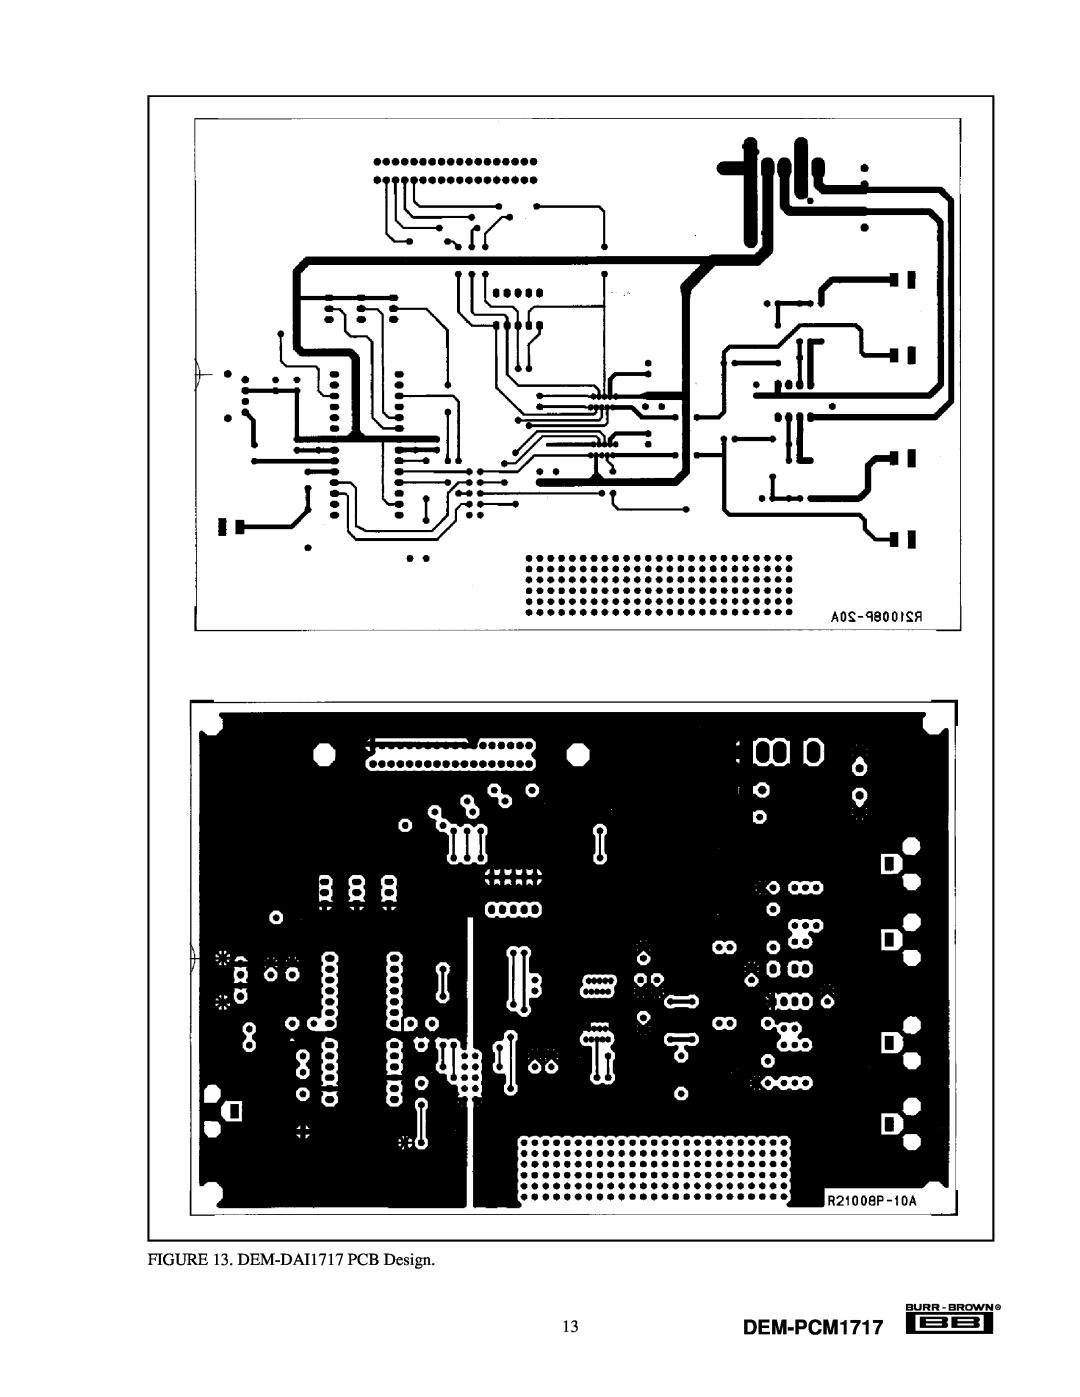 Texas Instruments manual 13DEM-PCM1717, DEM-DAI1717PCB Design 